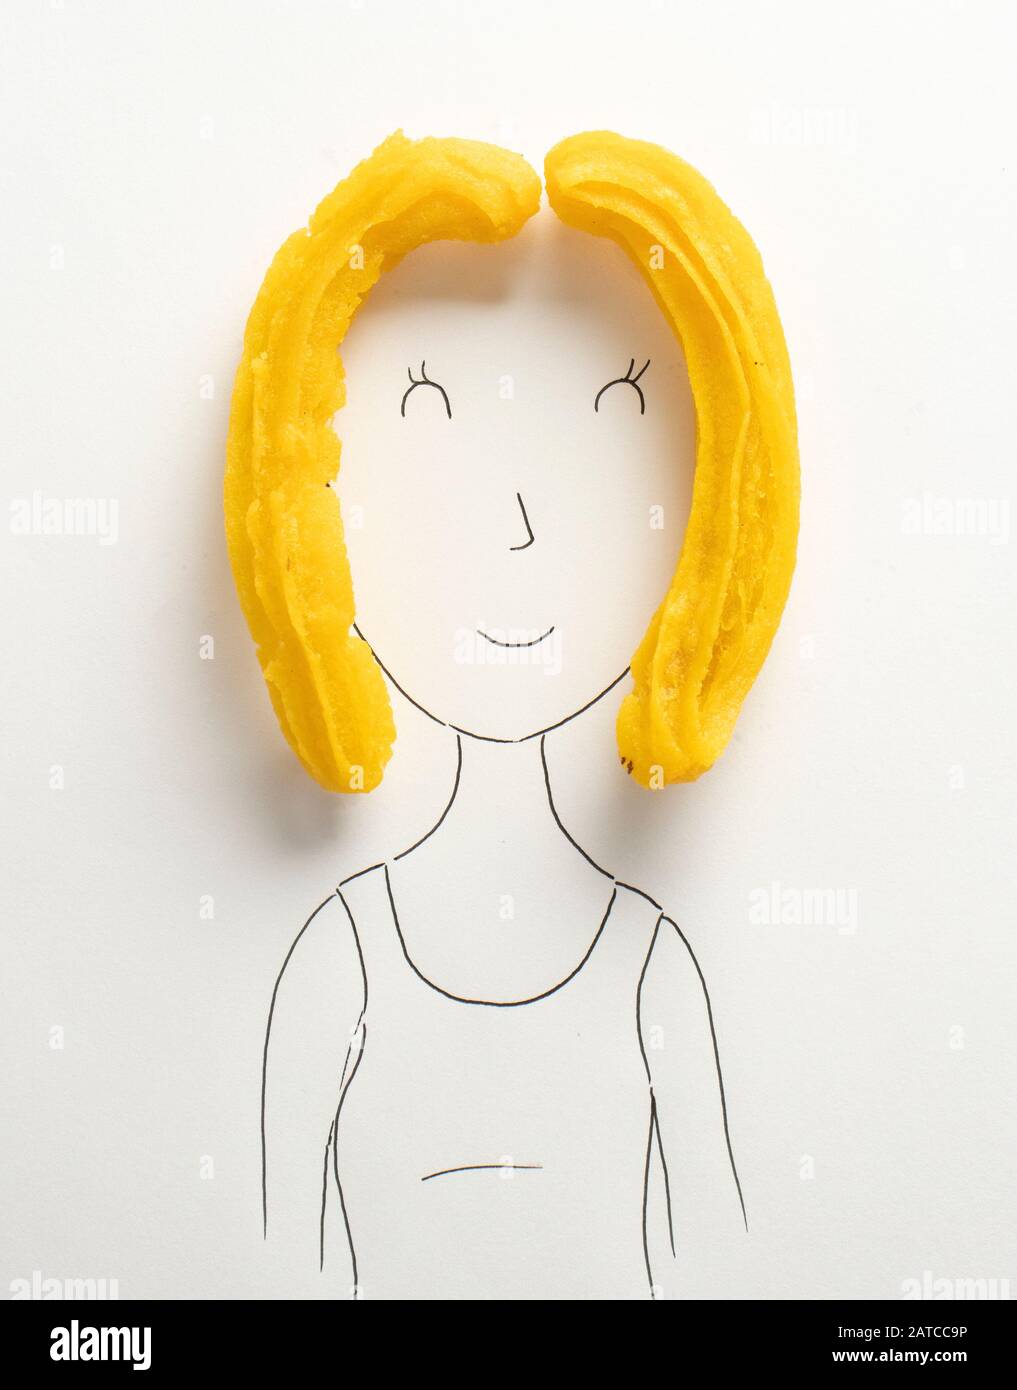 Portrait conceptuel d'une femme avec des cheveux blonds Banque D'Images